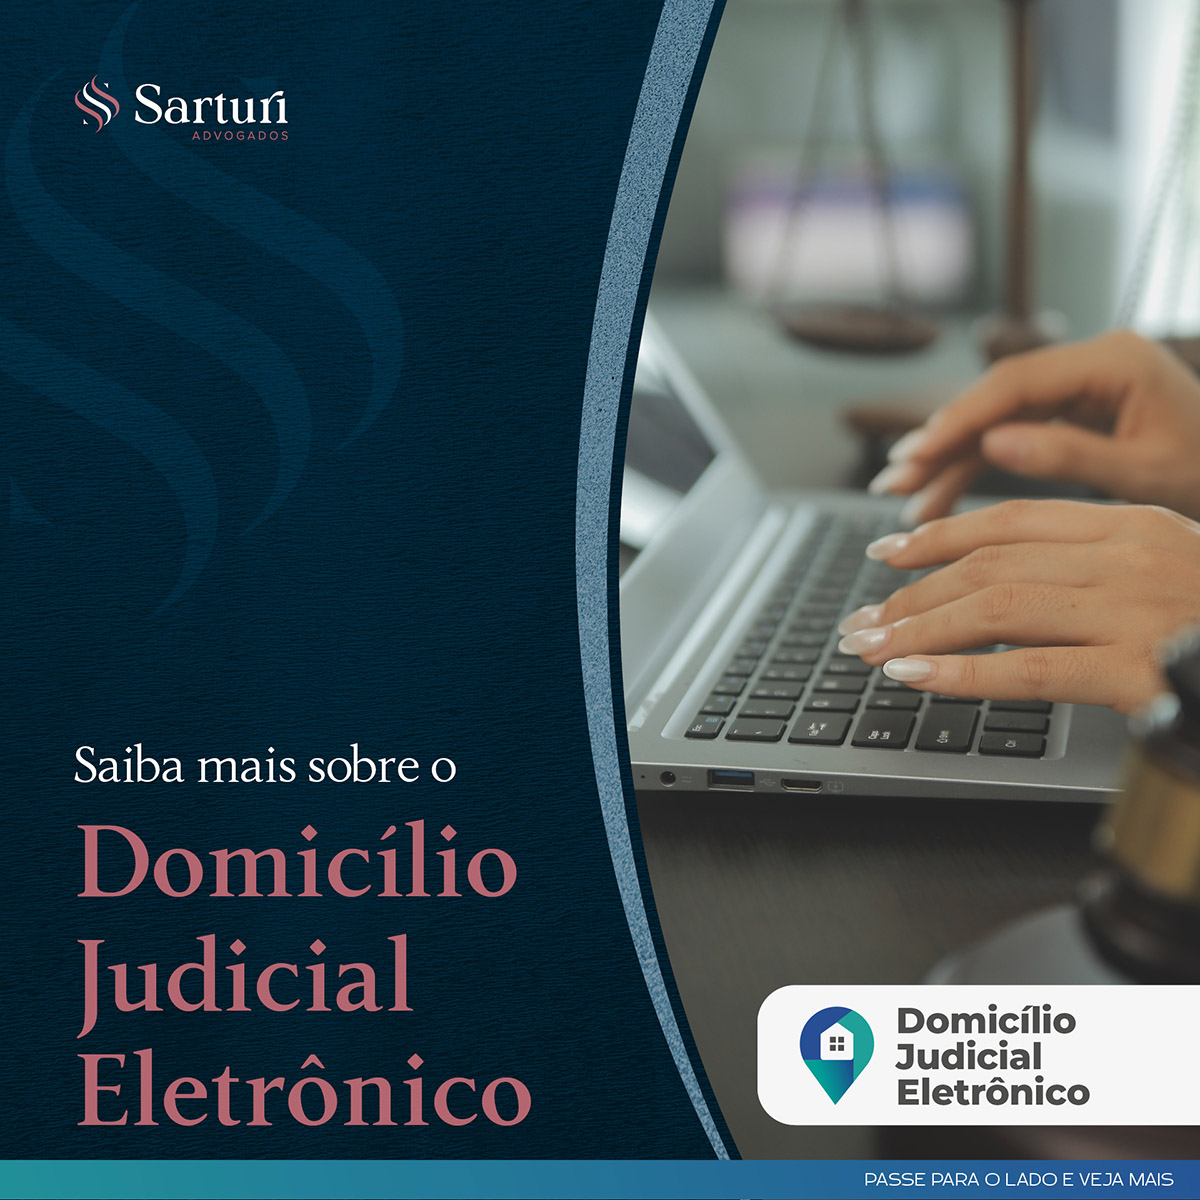 Saiba mais sobre o Domicílio Judicial Eletrônico